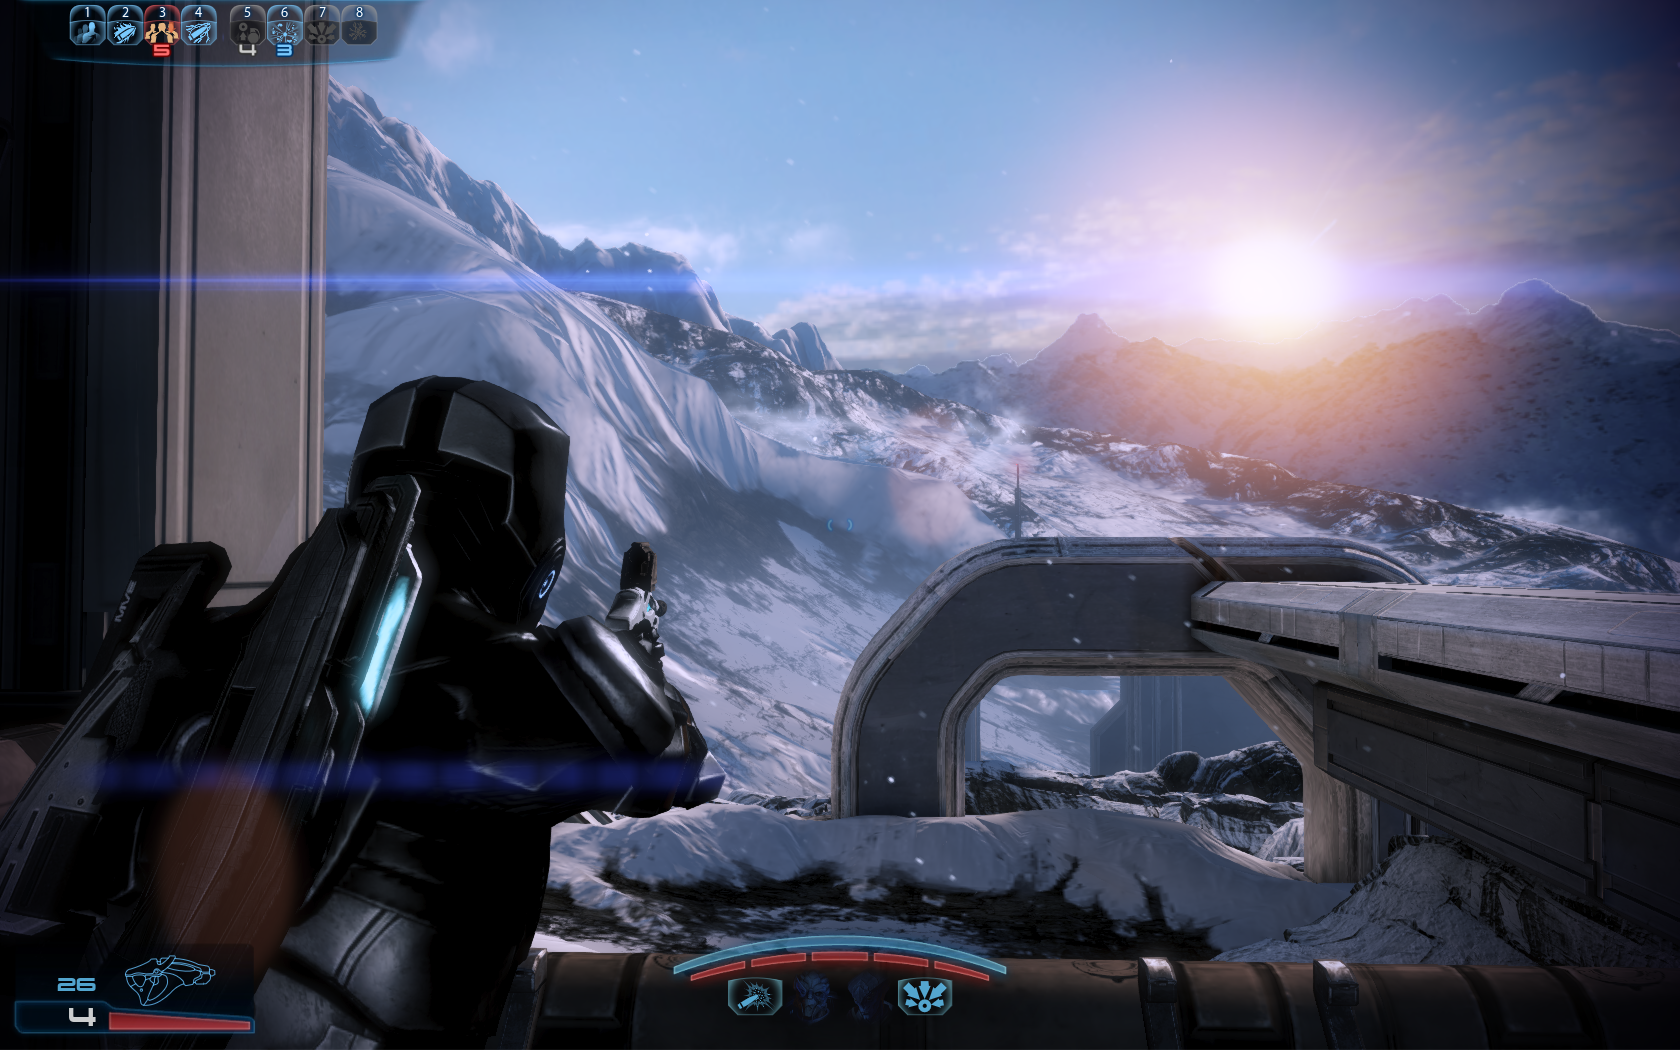 Пейзажи в играх - Шепард на фоне скал и заката - Mass Effect 3